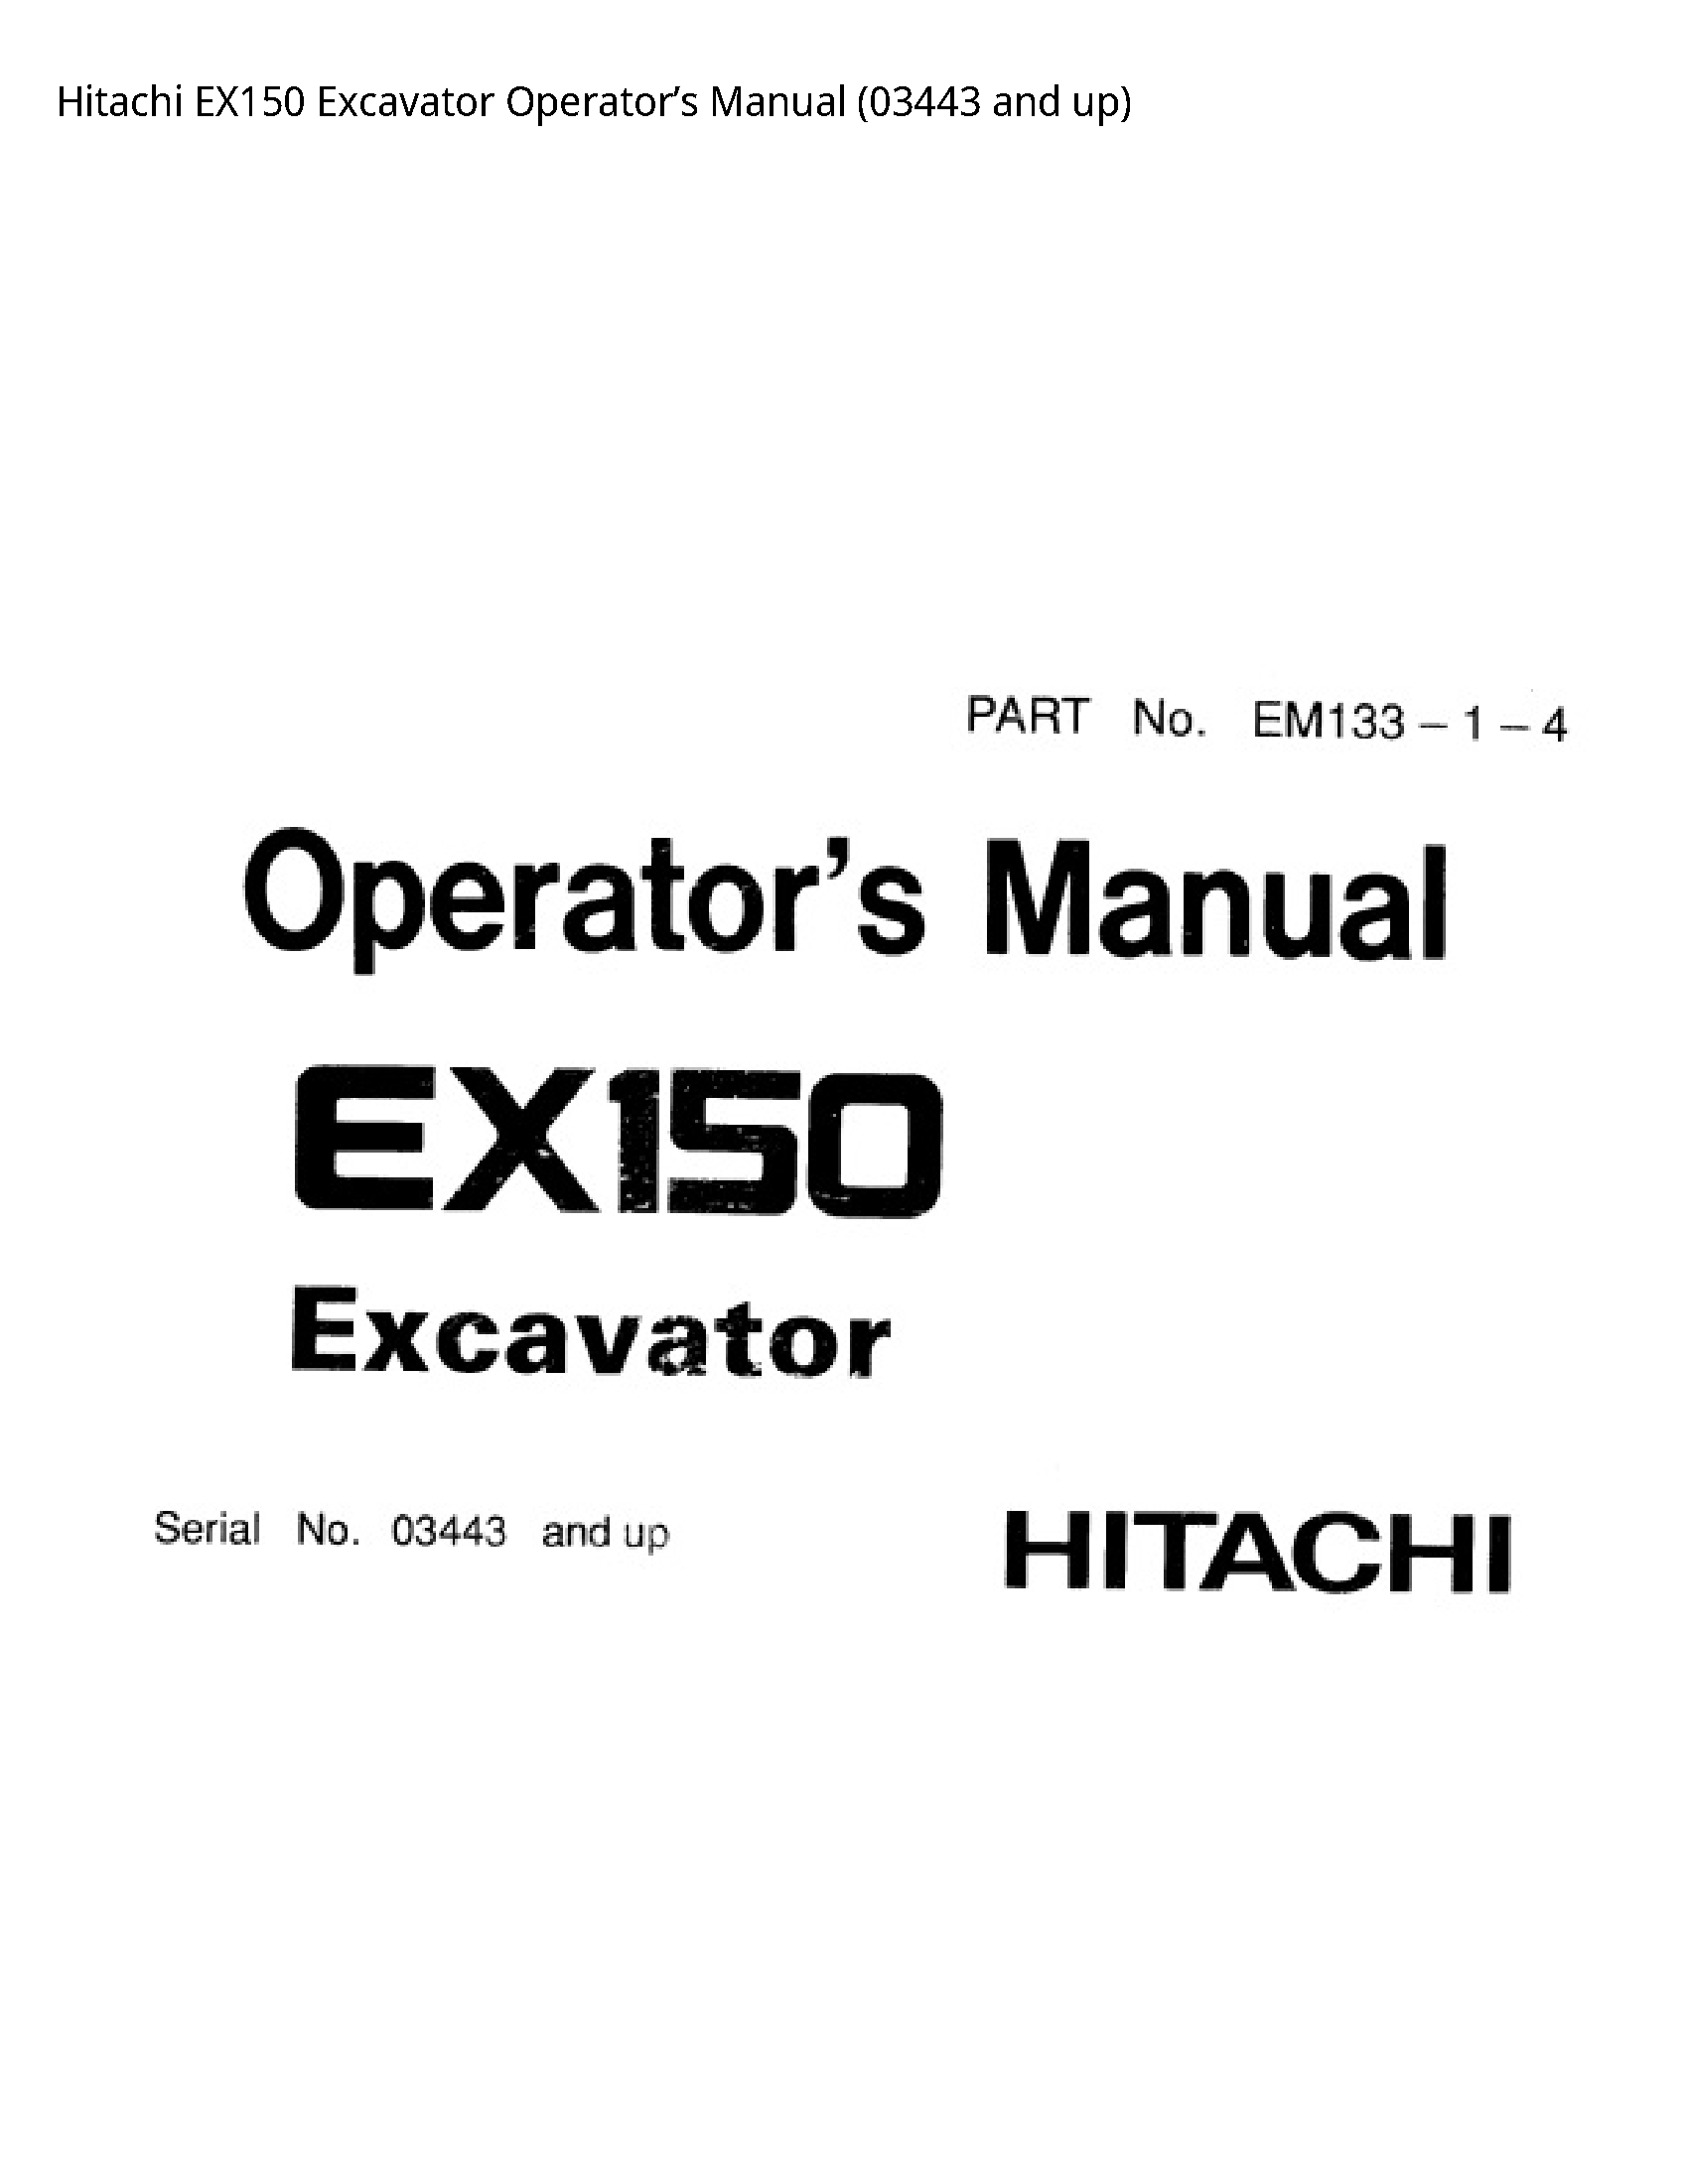 Hitachi EX150 Excavator Operator’s manual